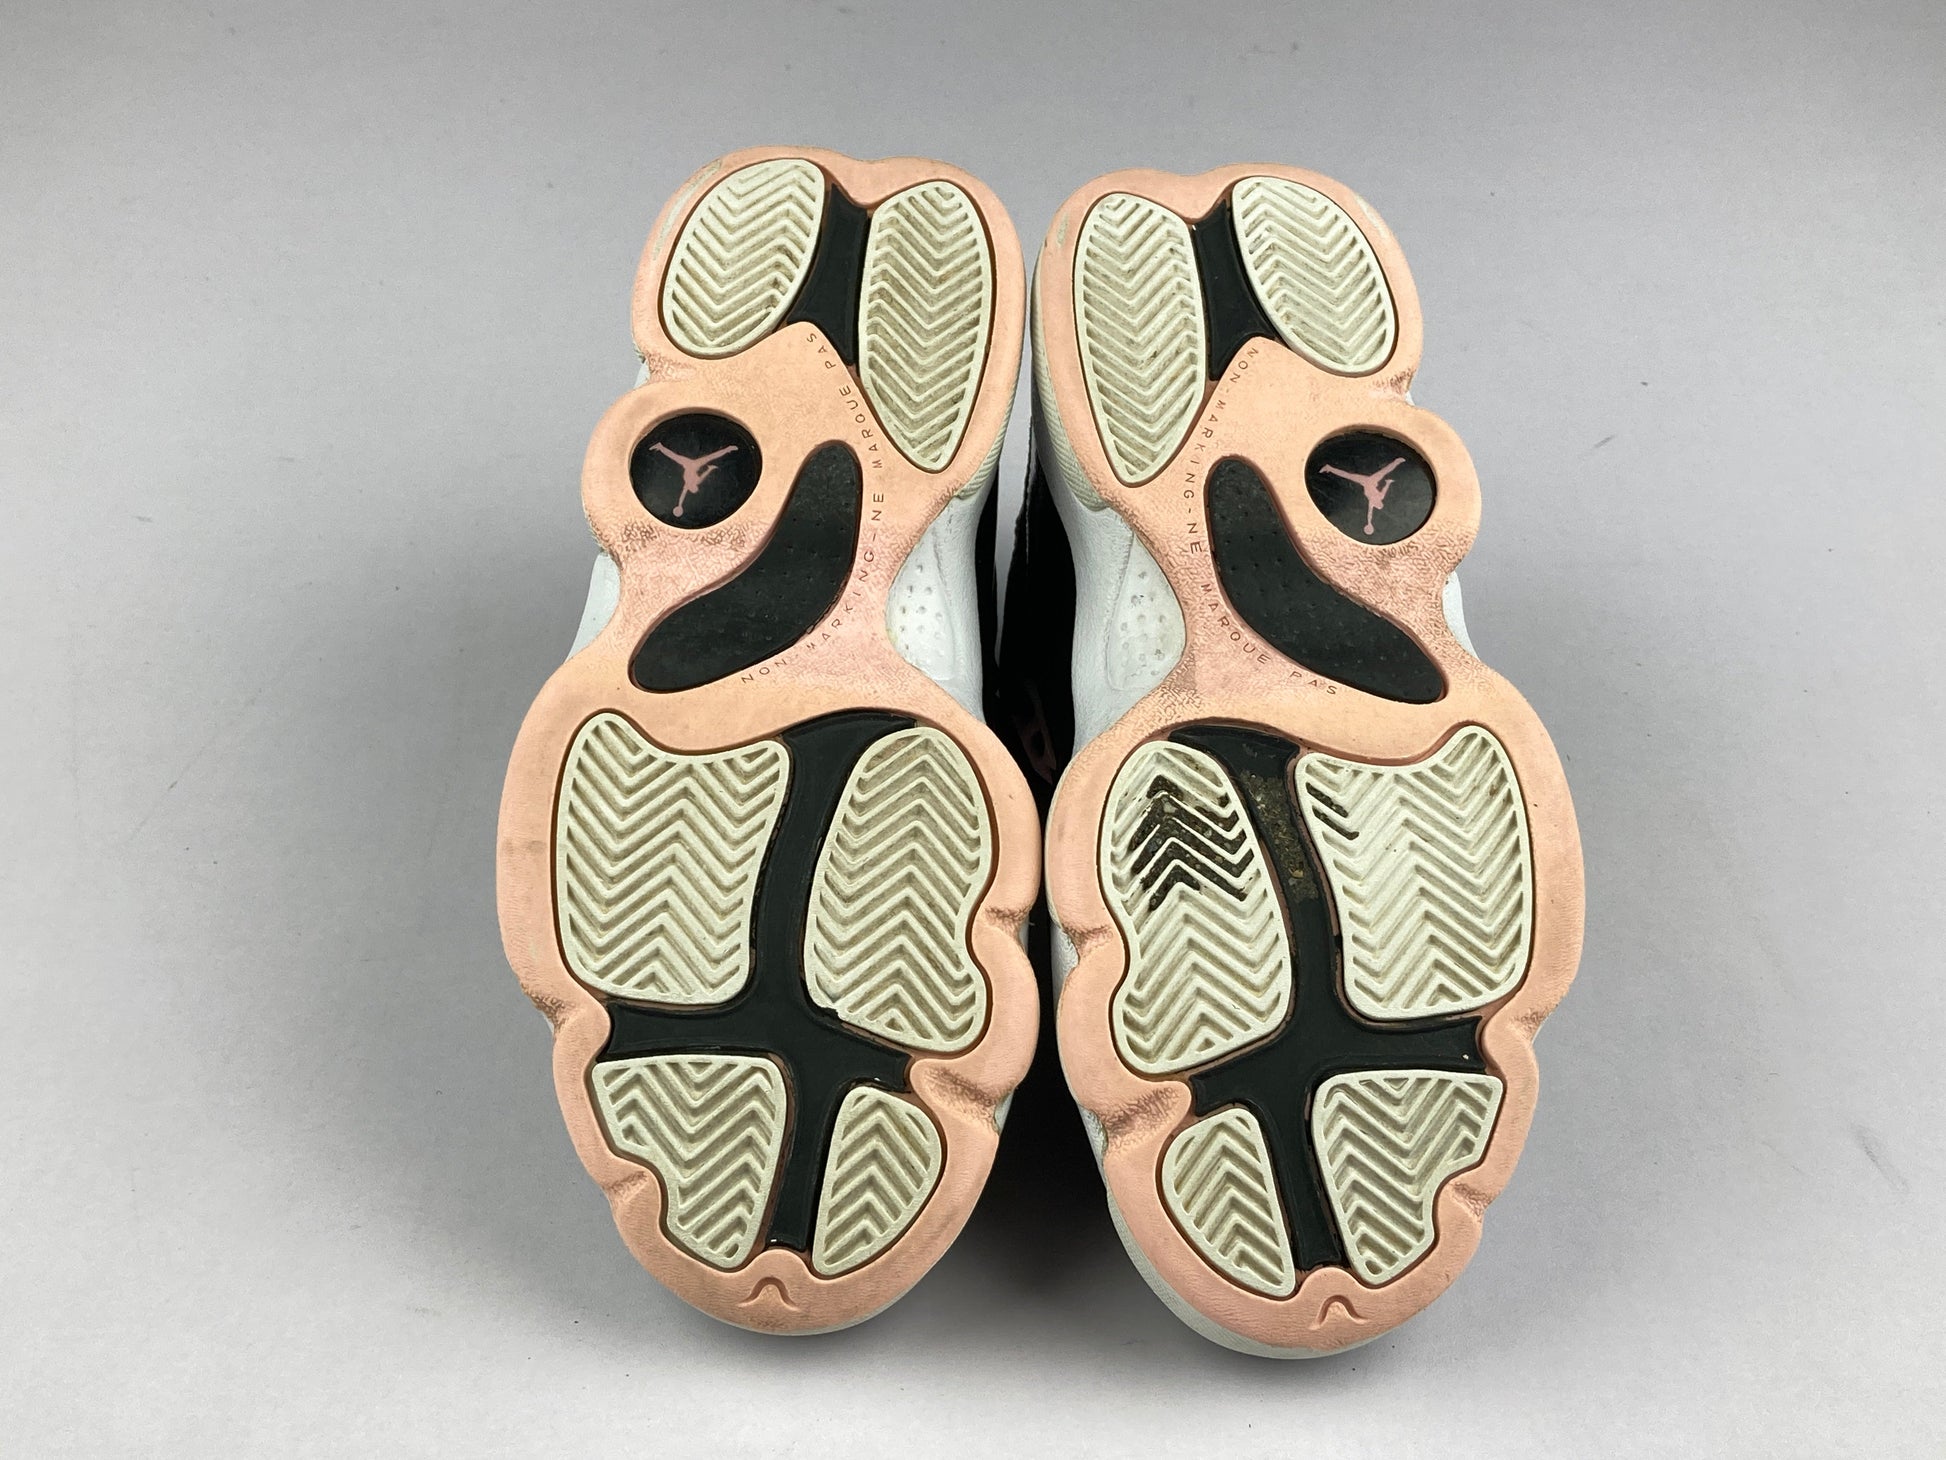 Nike Jordan 6 Rings PS 'Black Arctic Punch' 323431-002-Sneakers-Athletic Corner